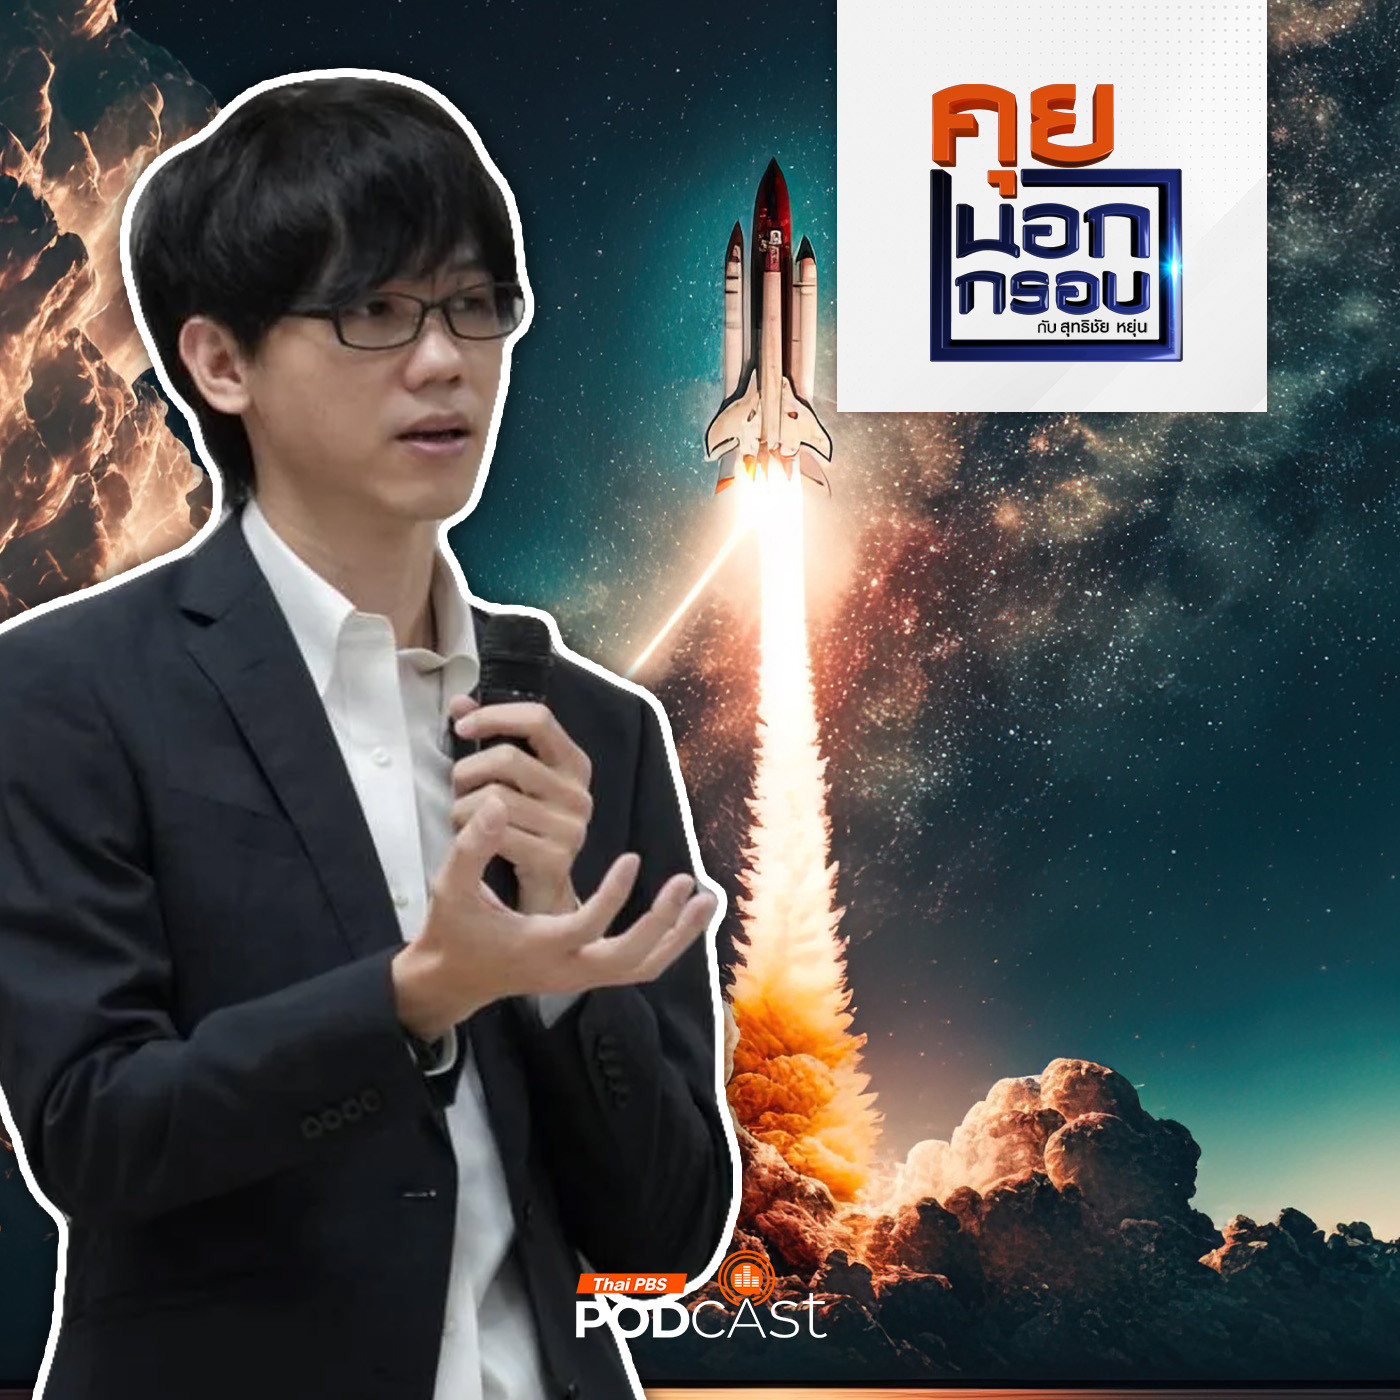 คุยนอกกรอบ EP. 15: อนาคตเศรษฐกิจอวกาศของไทย เป็นไปได้หรือไม่ กับดาวเทียมสั